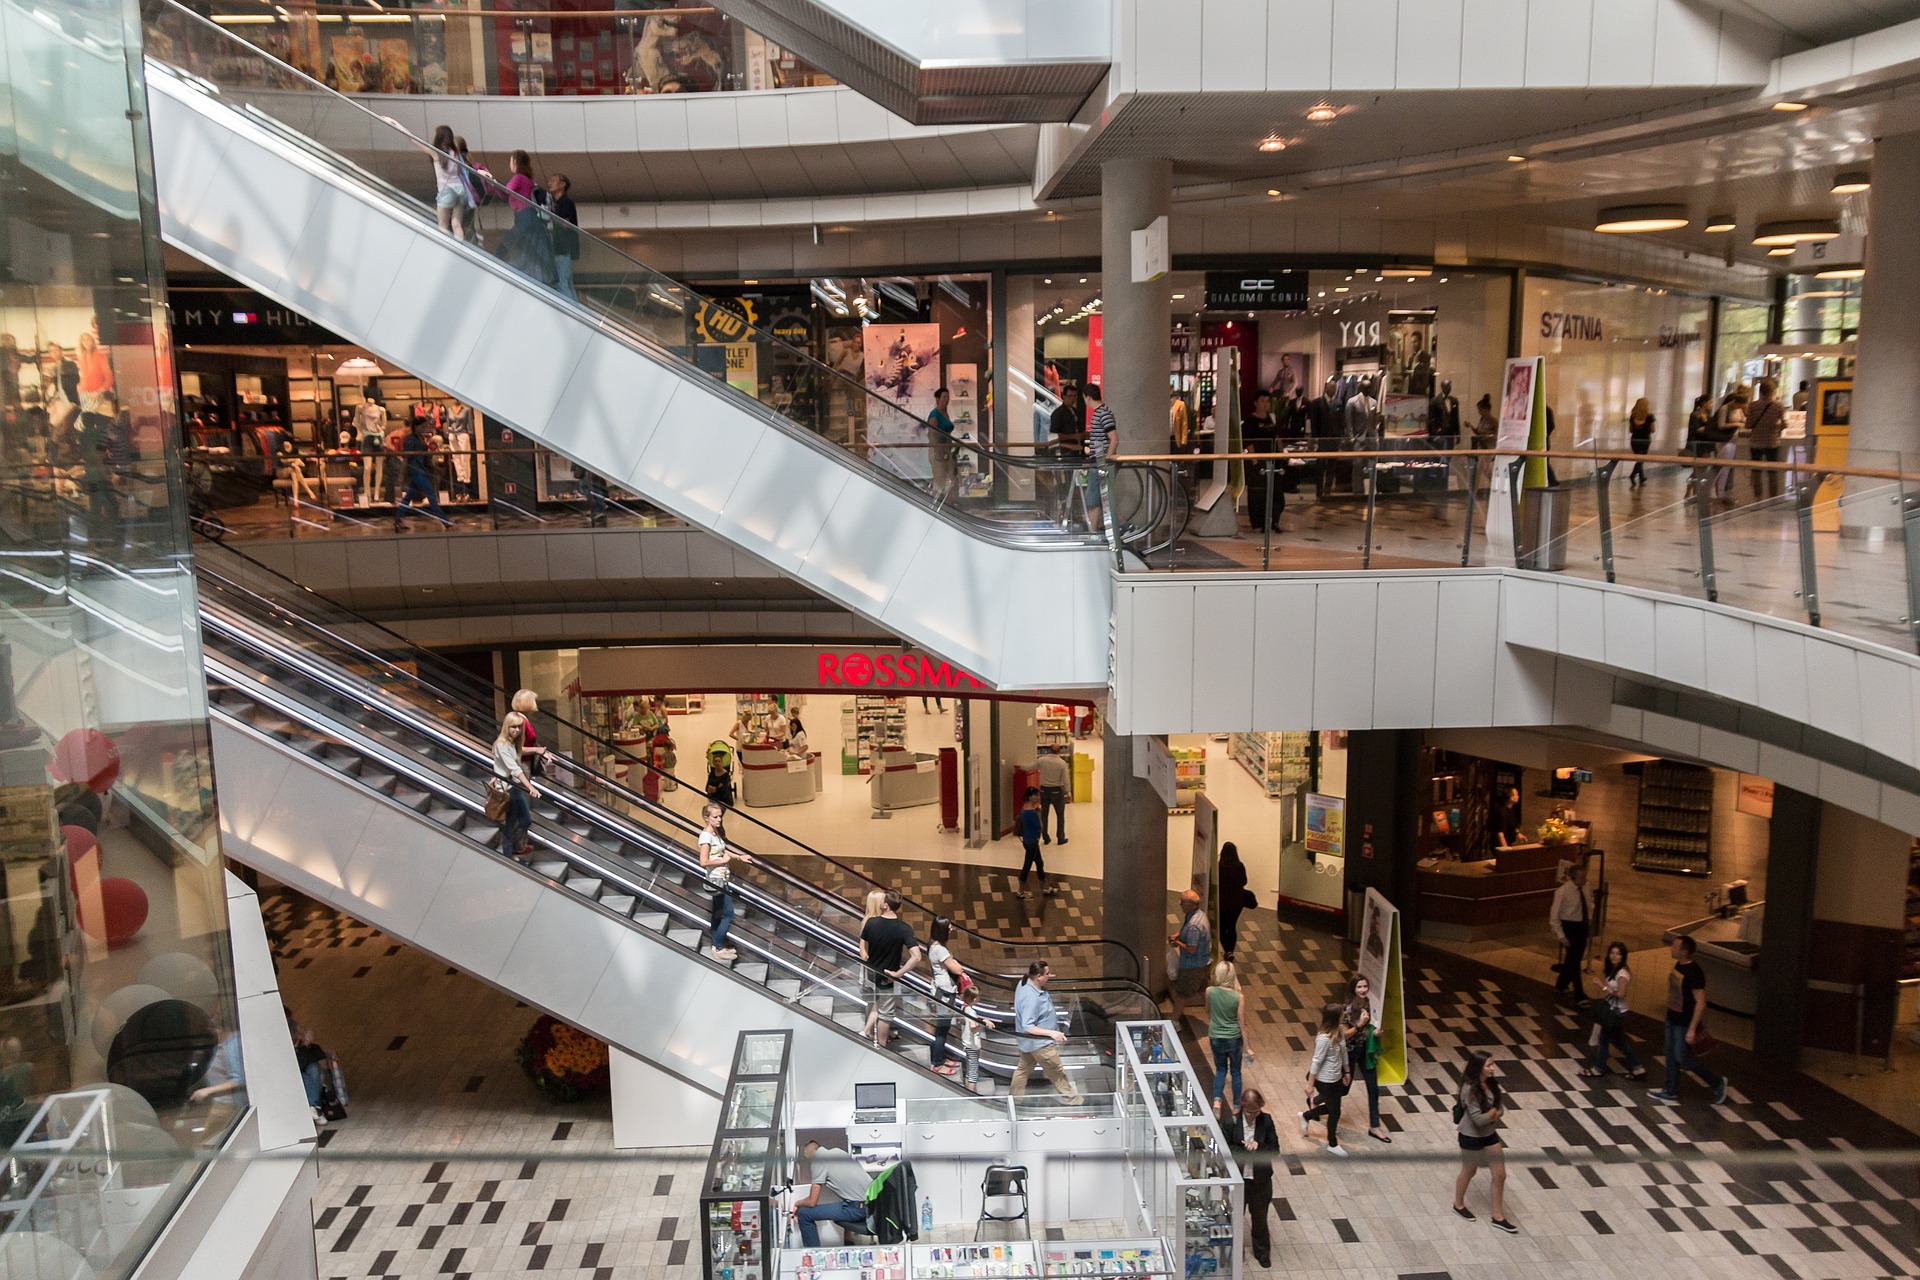  MP recomenda que shoppings de Curitiba não façam restrição na entrada de adolescentes